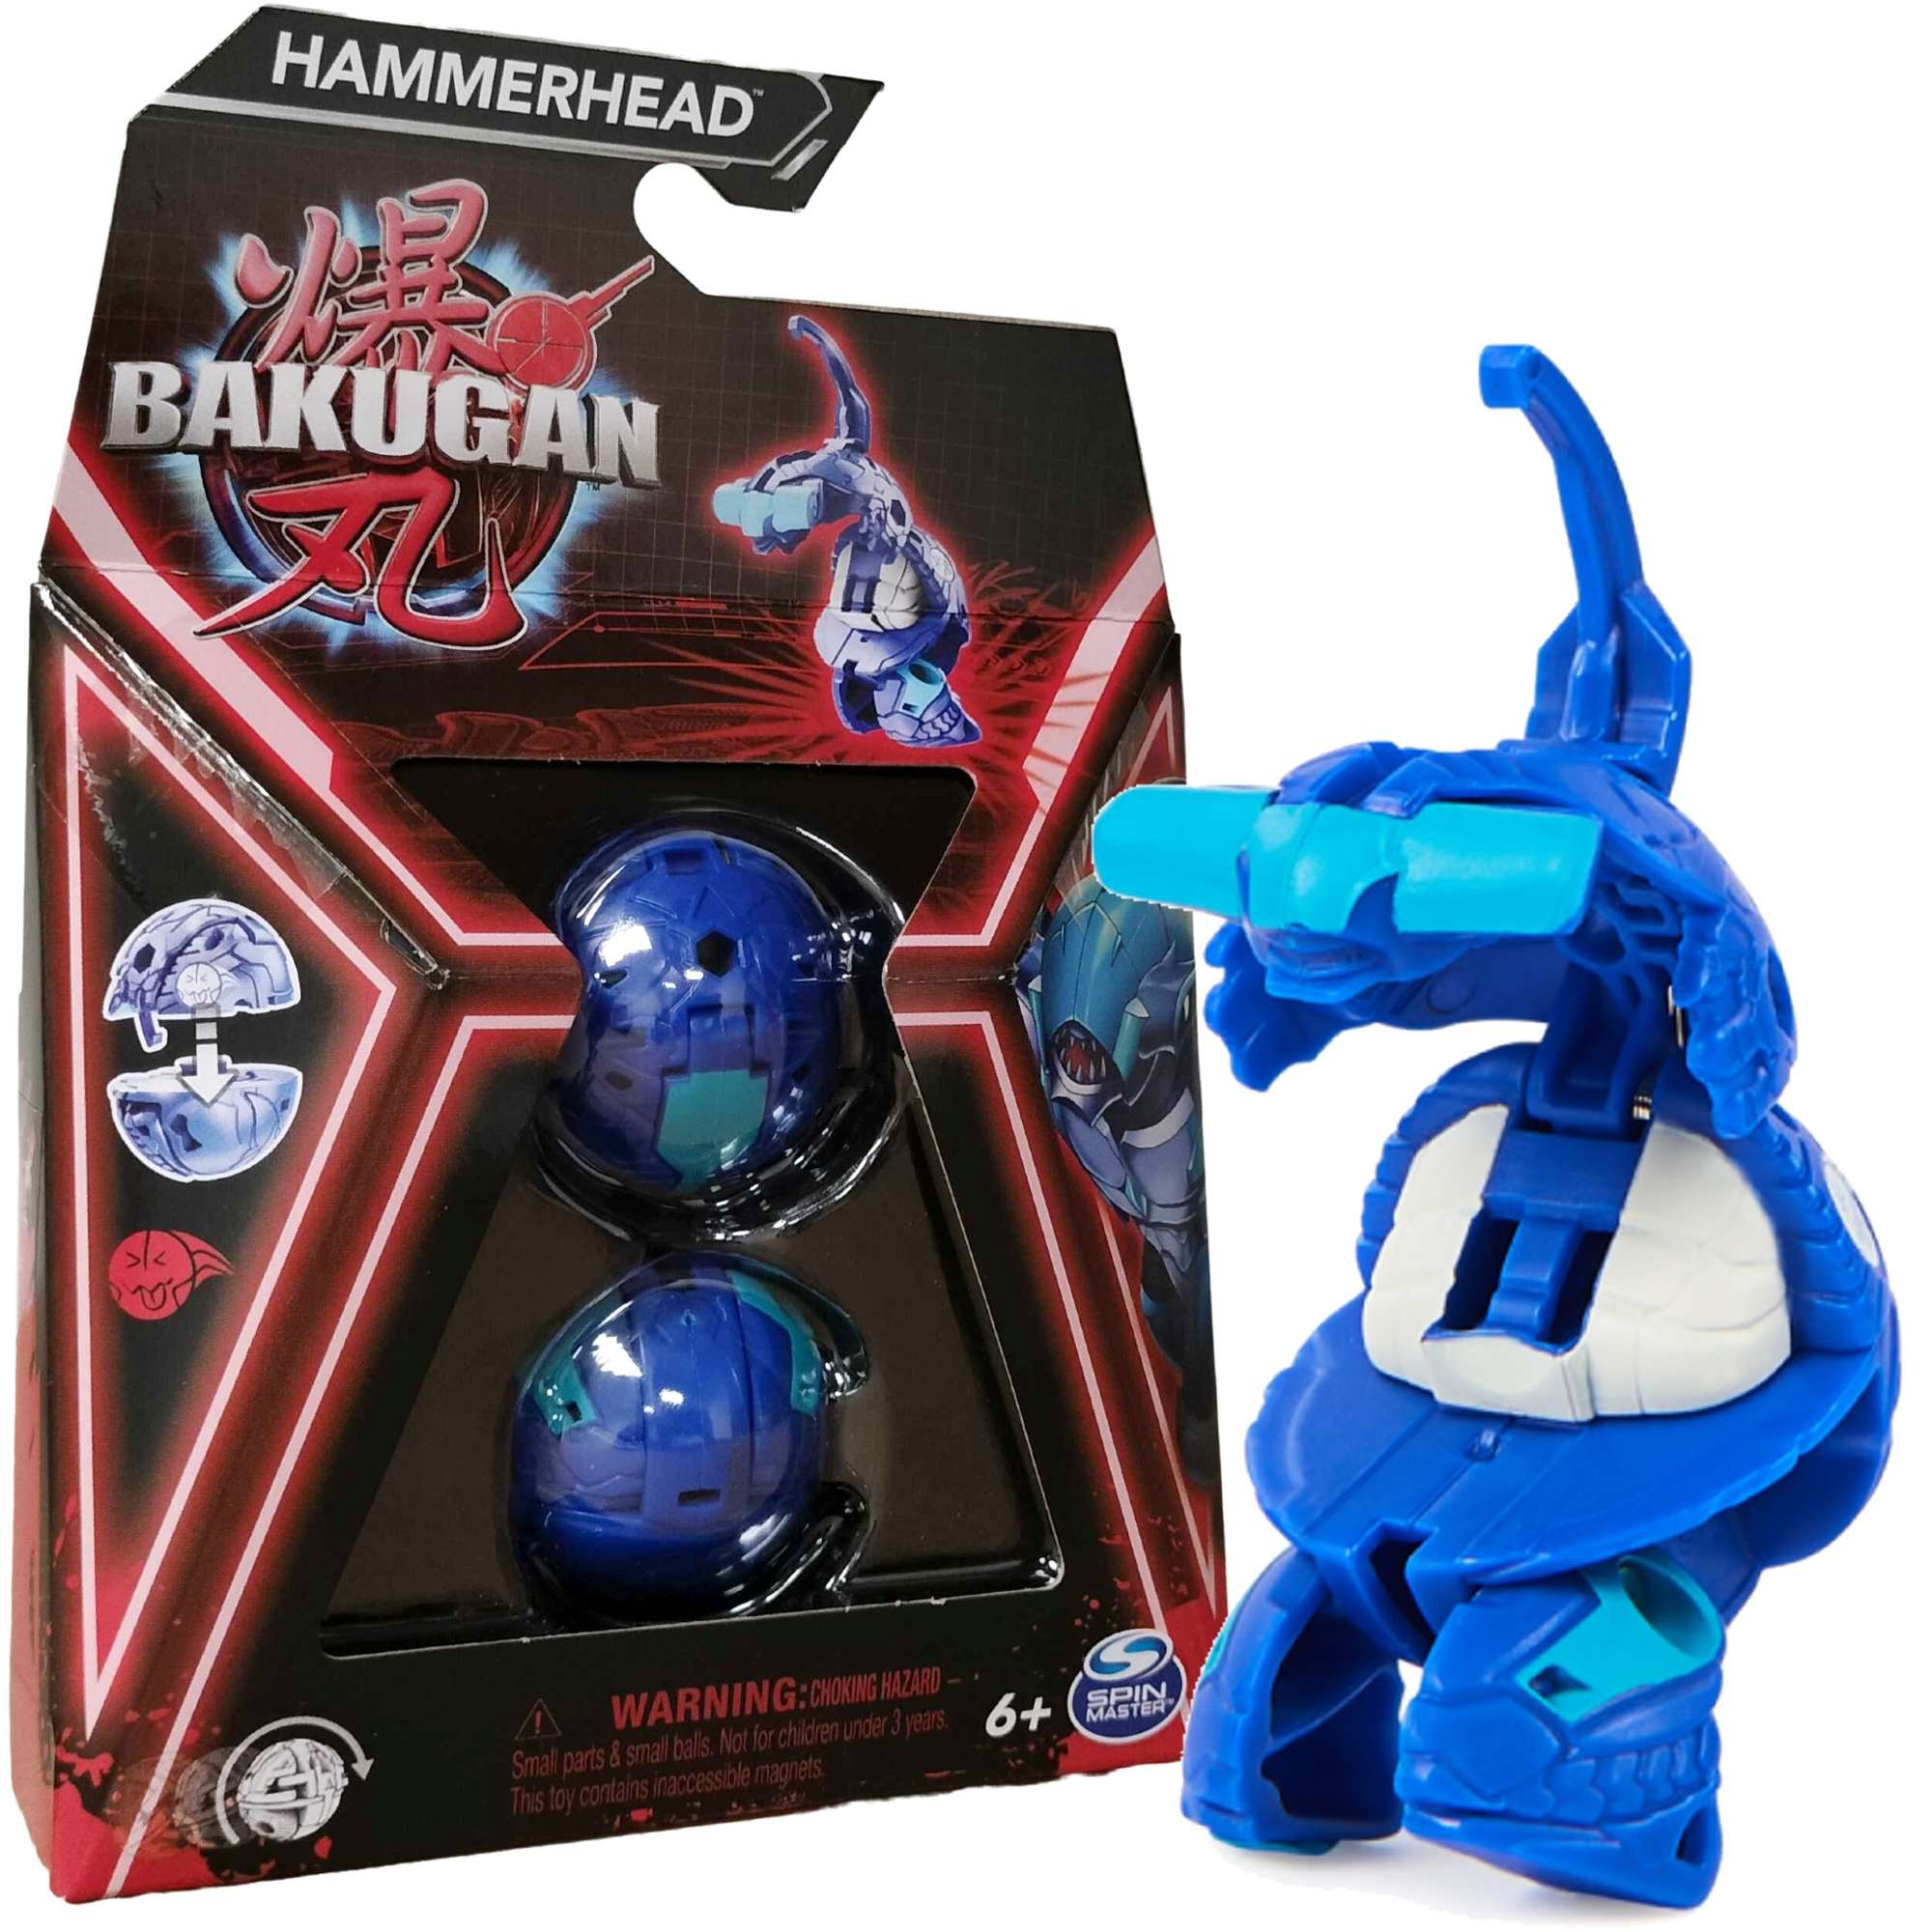 Bakugan Hammerhead Niebieska figurka bitewna transformujca + karty